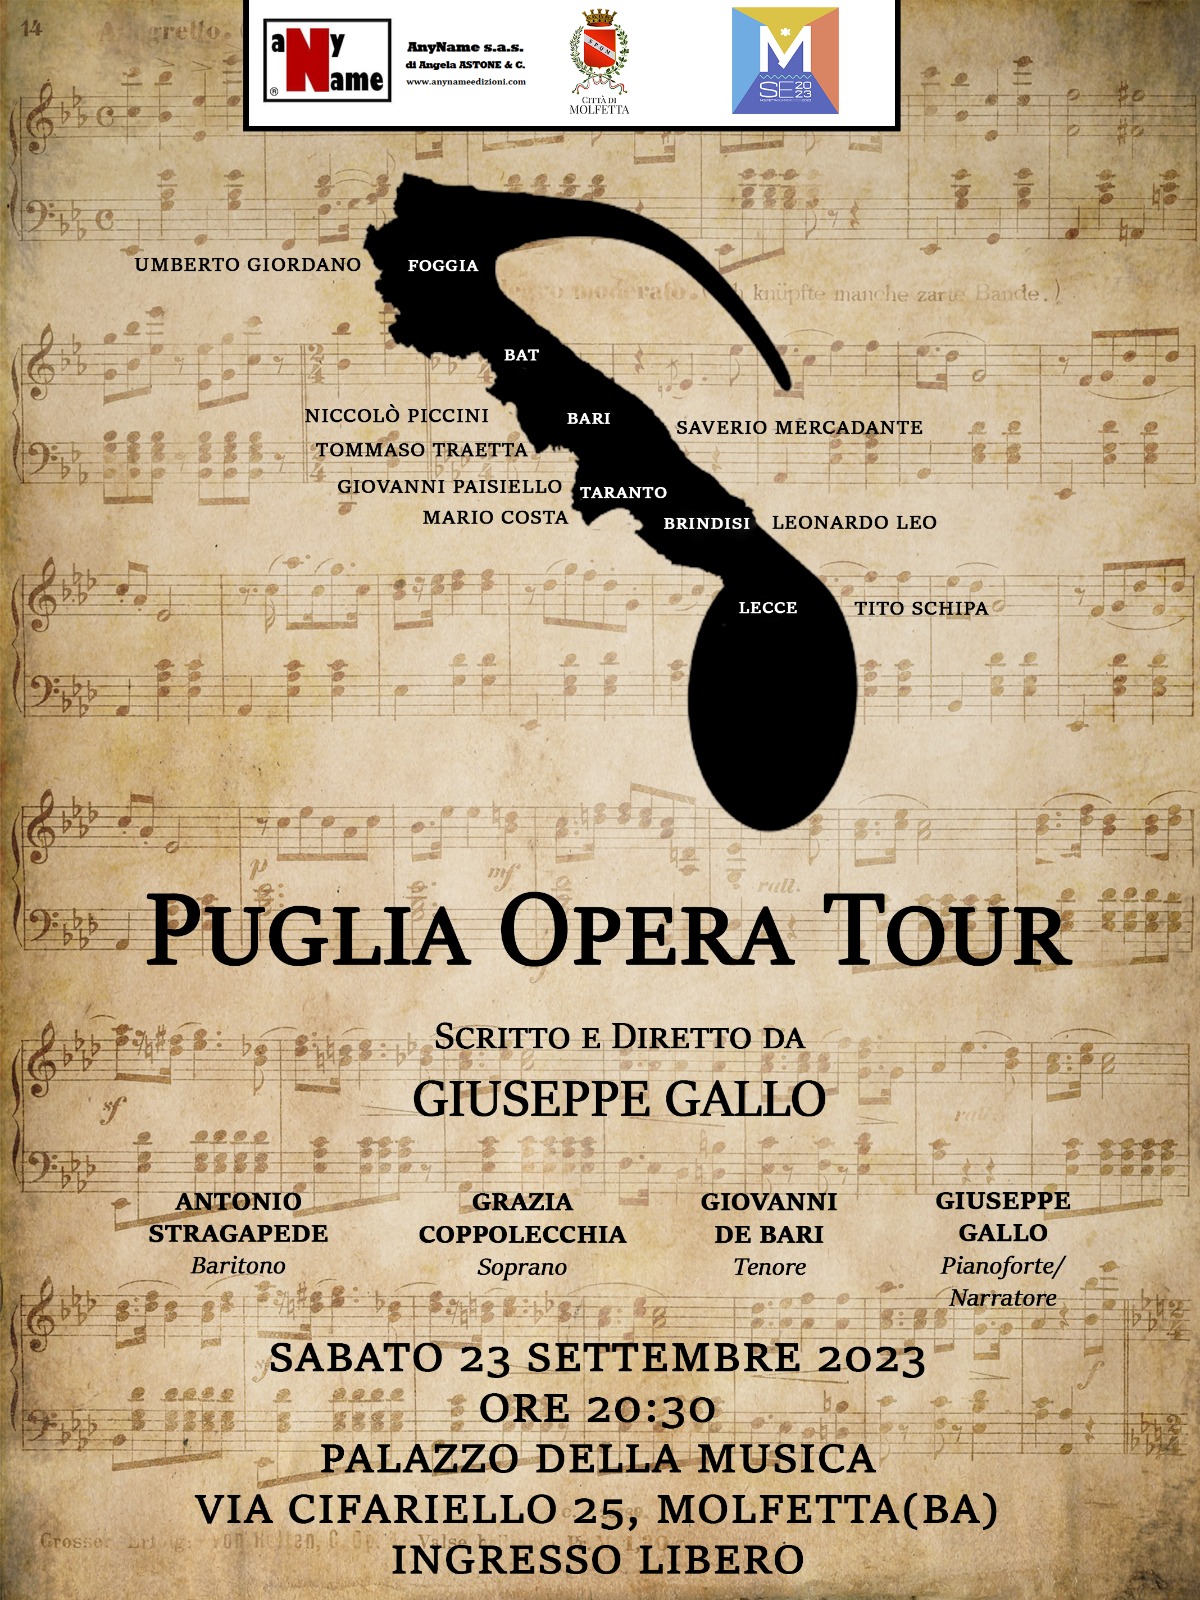 Il Puglia Opera Tour fa tappa a Molfetta